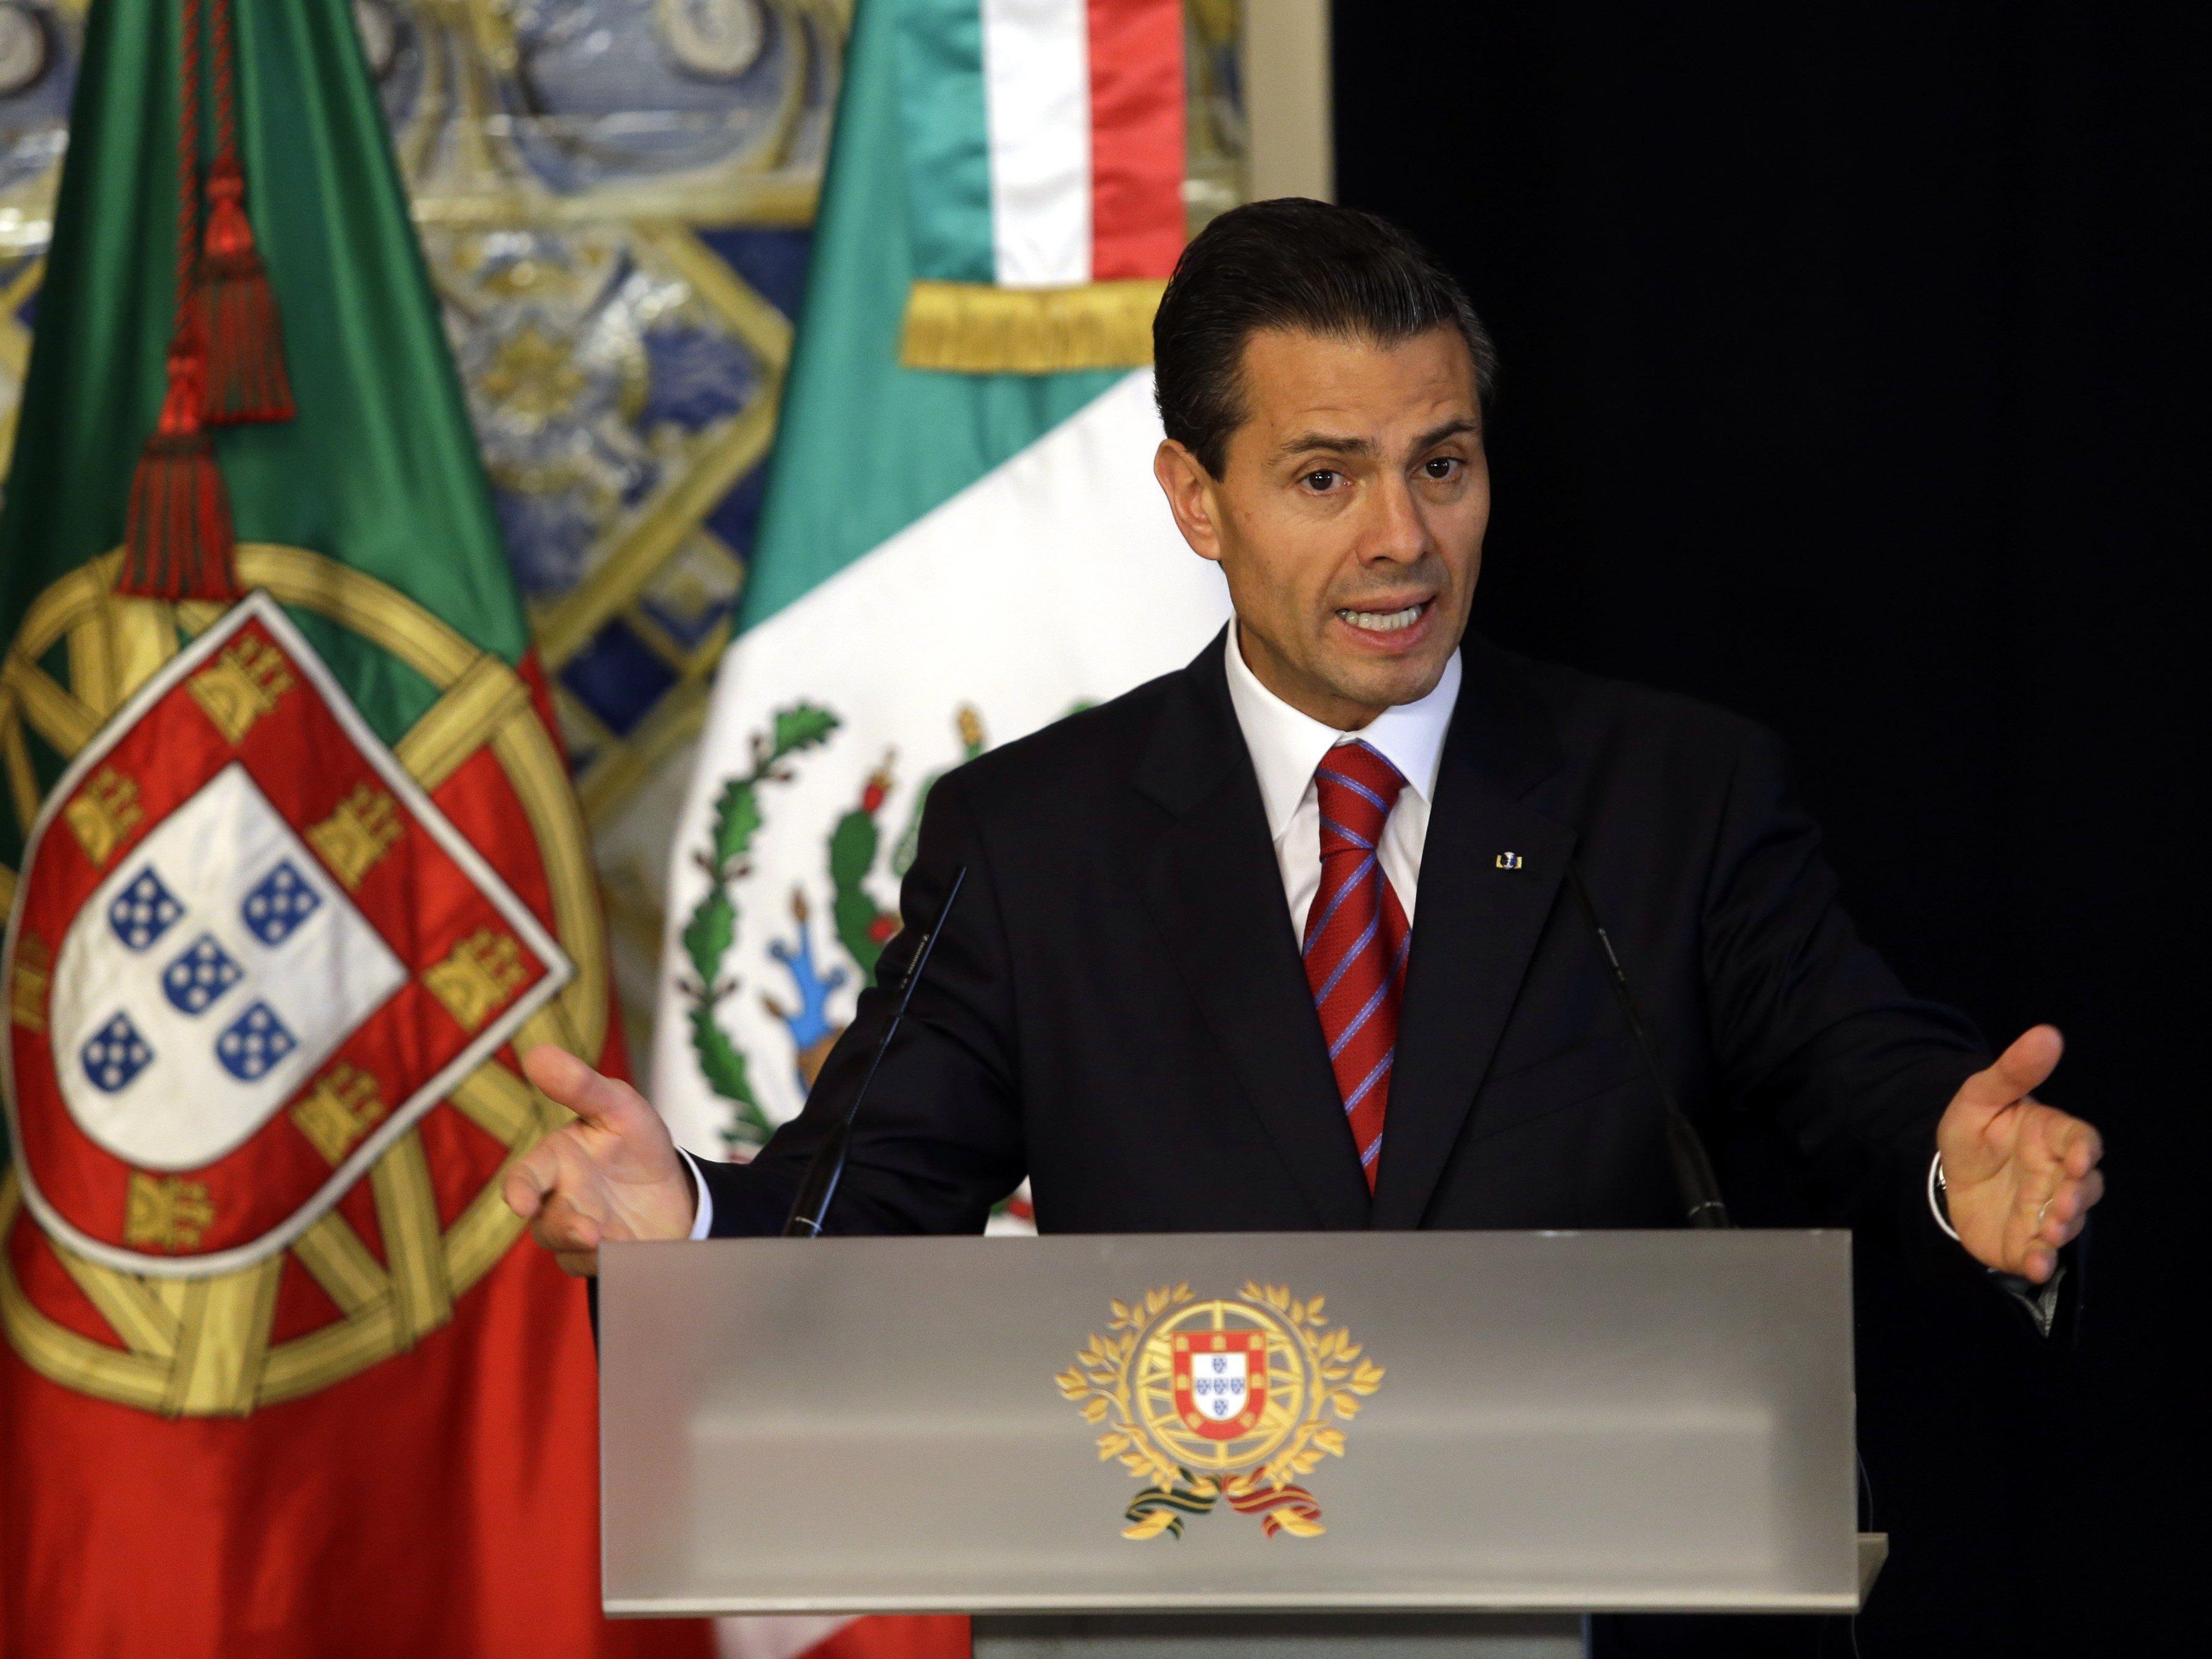 Der Staatschef Enrique Pena Nieto berichtet von weniger Drogenkriminalität.